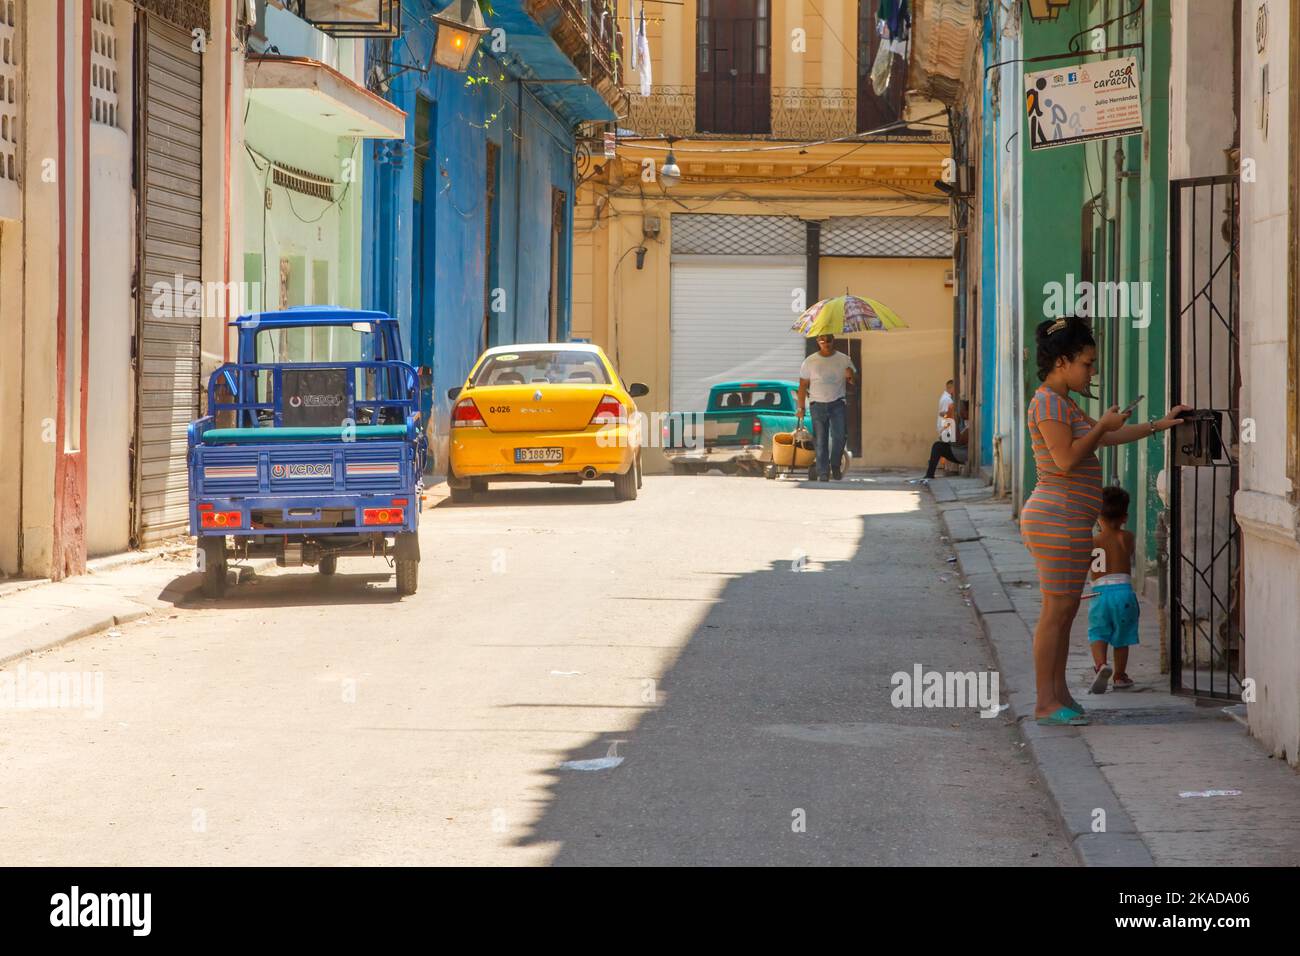 Una mujer cubana interactúa a la puerta de un pequeño negocio privado. Los vehículos modernos están estacionados en la calle de la ciudad. Foto de stock